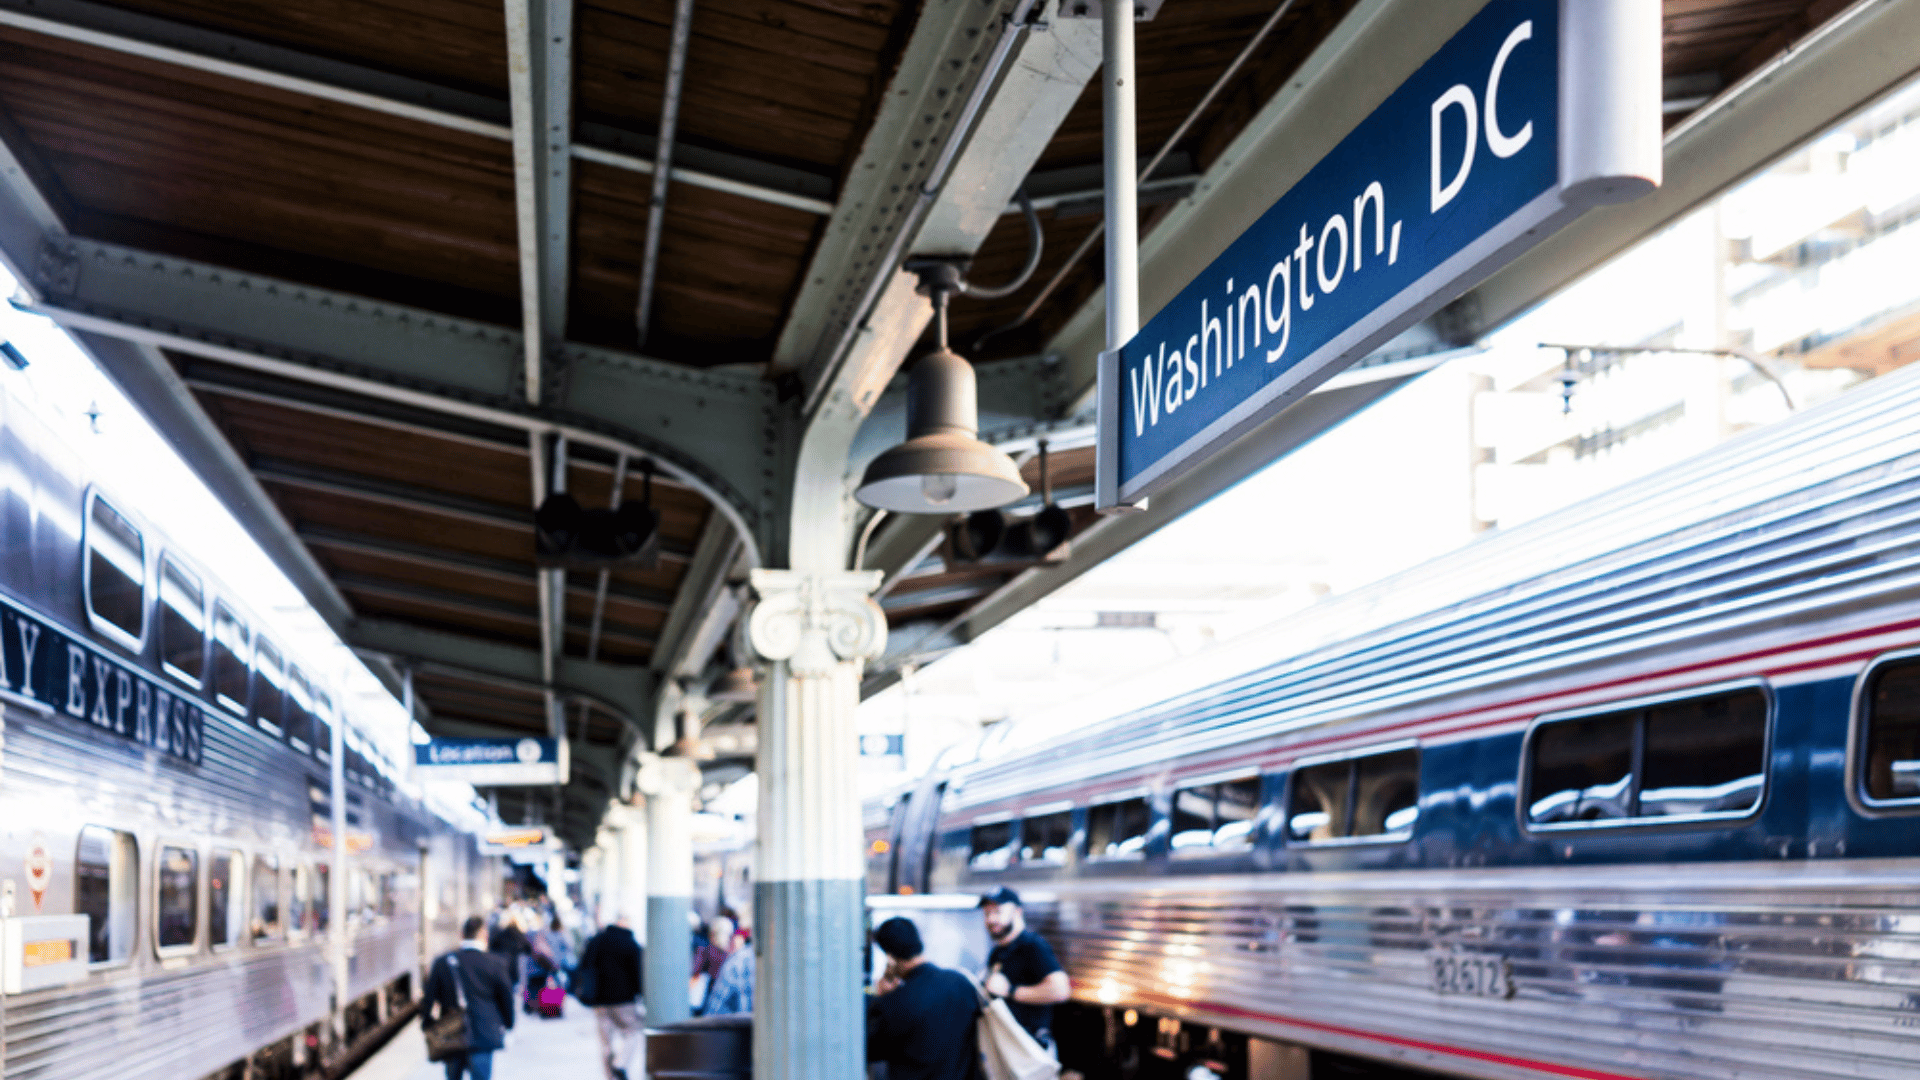 Amtrak Washington D.C. Travelers Switching To Train Travel